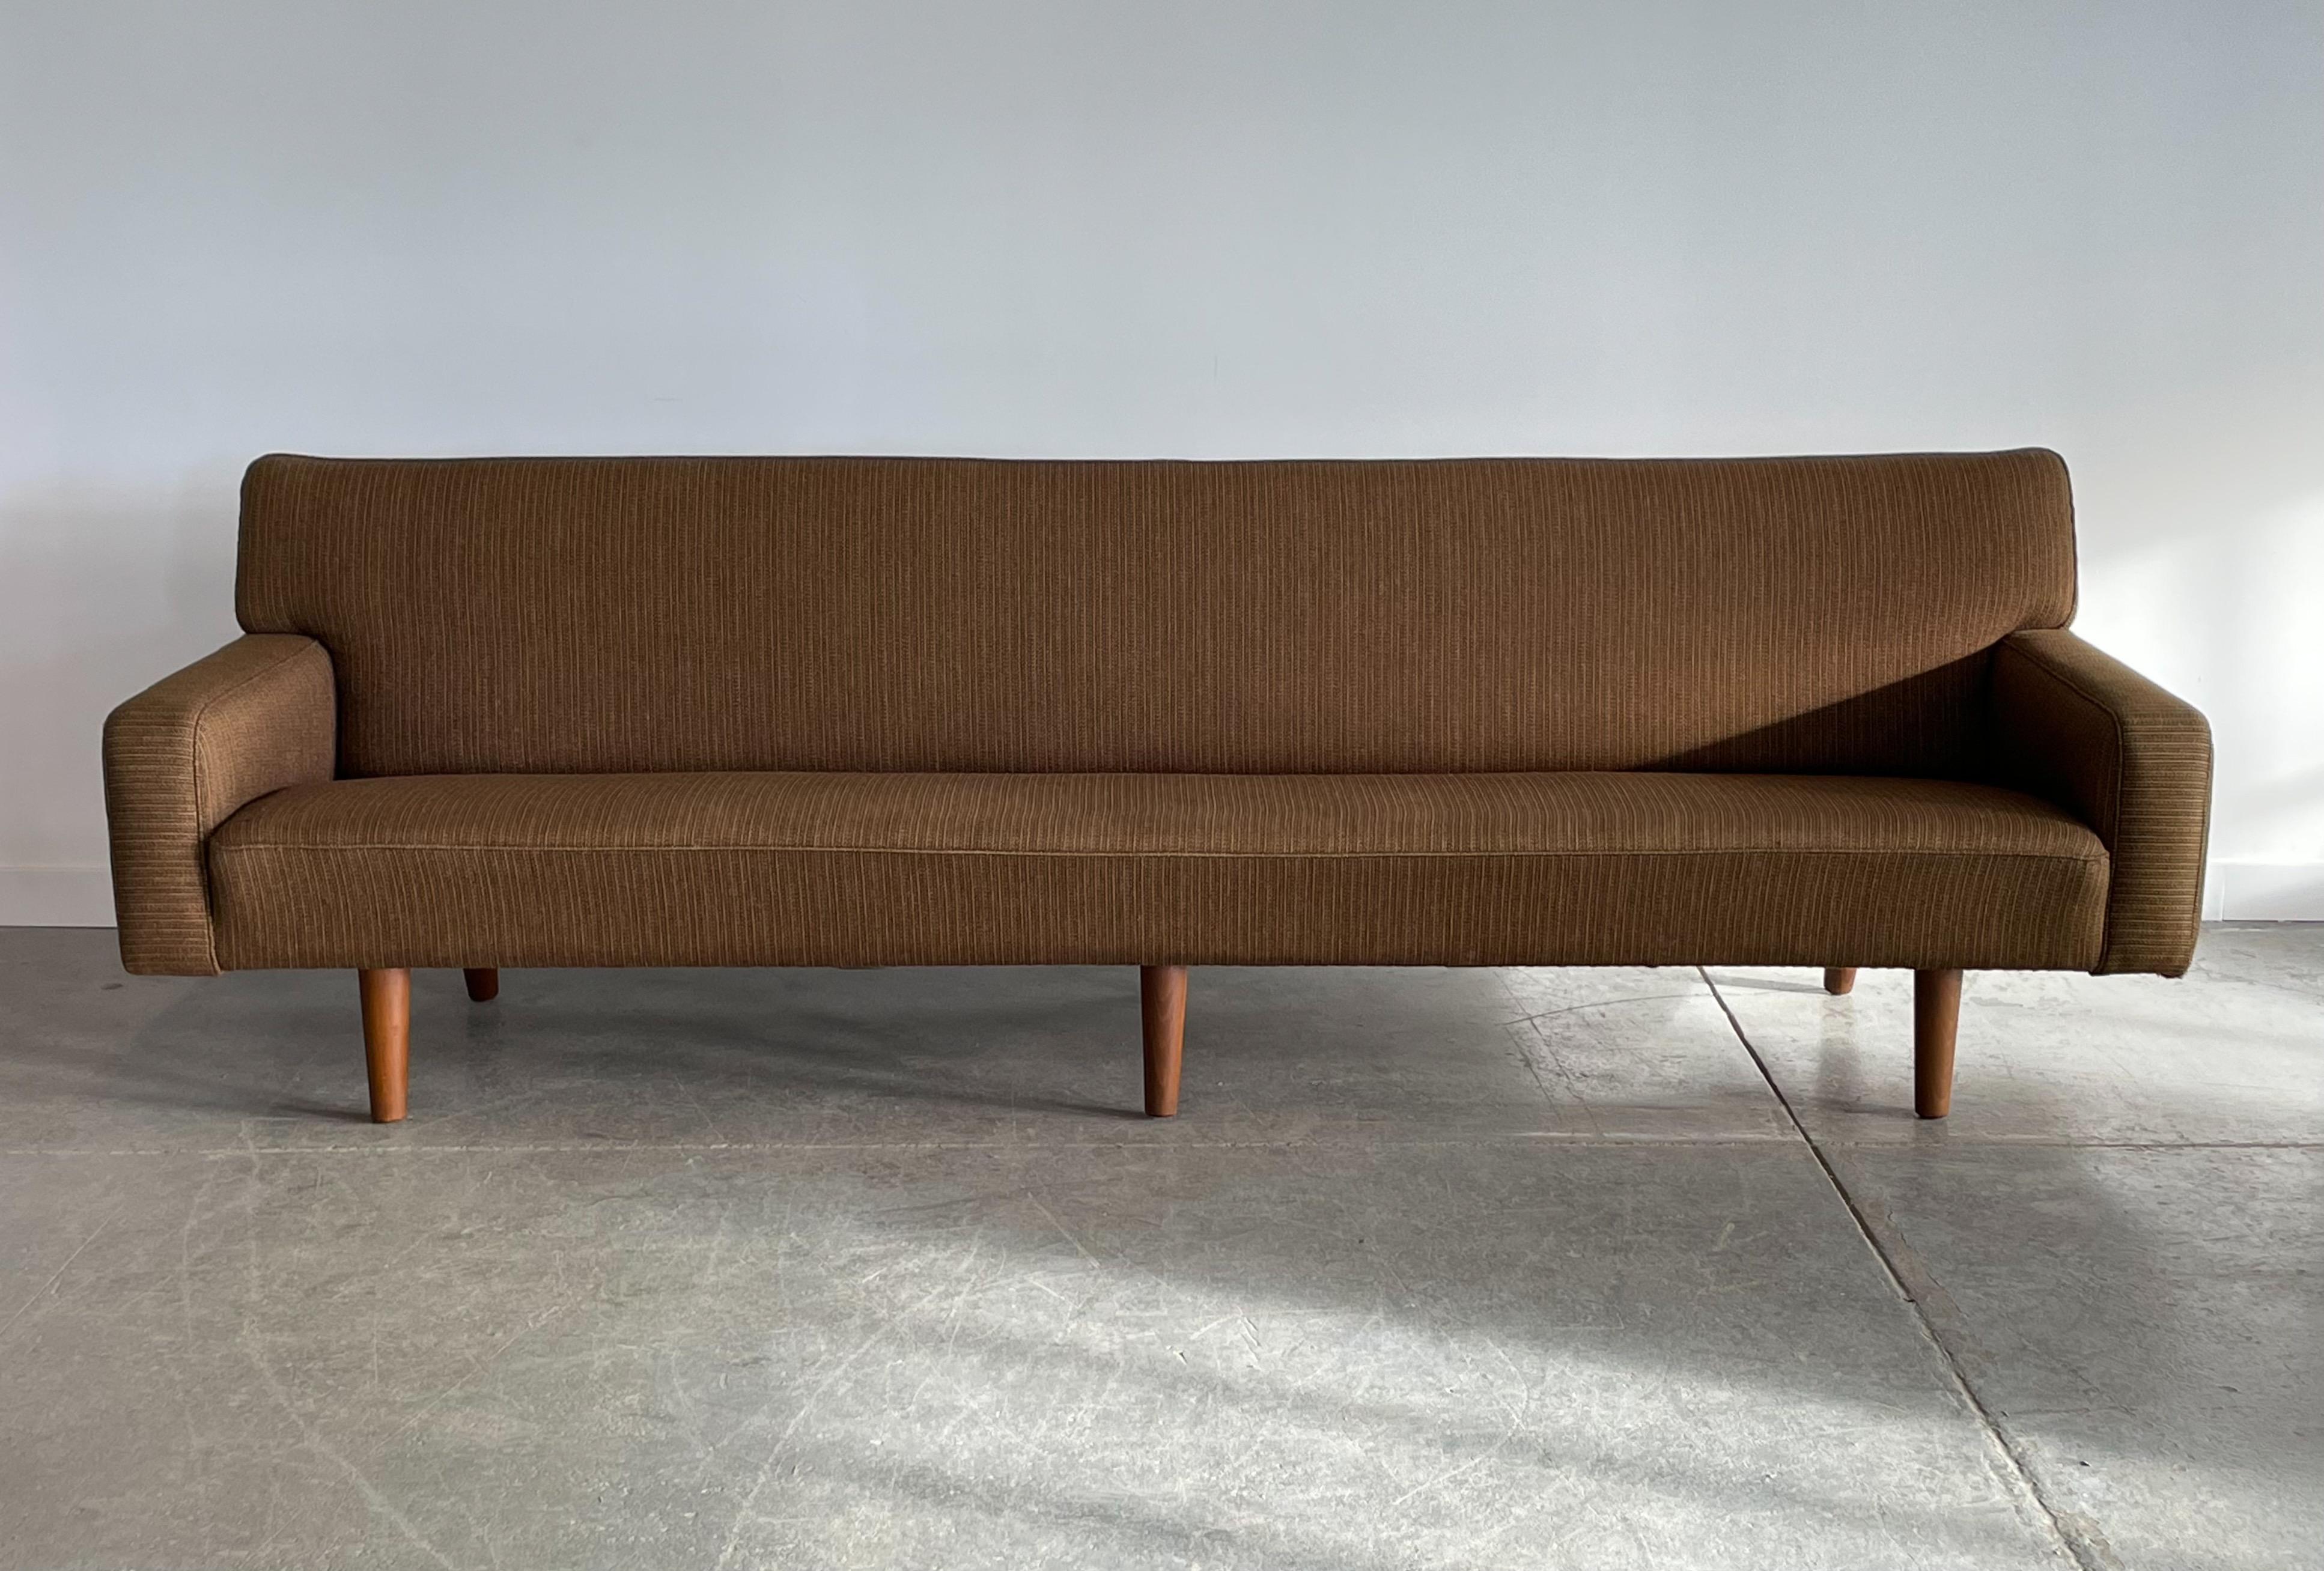 Monumentales und seltenes viersitziges Sofa AP33, entworfen von Hans Wegner für AP Stolen, Dänemark. Das Möbelstück hat abgewinkelte Eichenbeine und die Original-Wollpolsterung. Er hat eine stromlinienförmige, fast zeitgenössische Silhouette, die